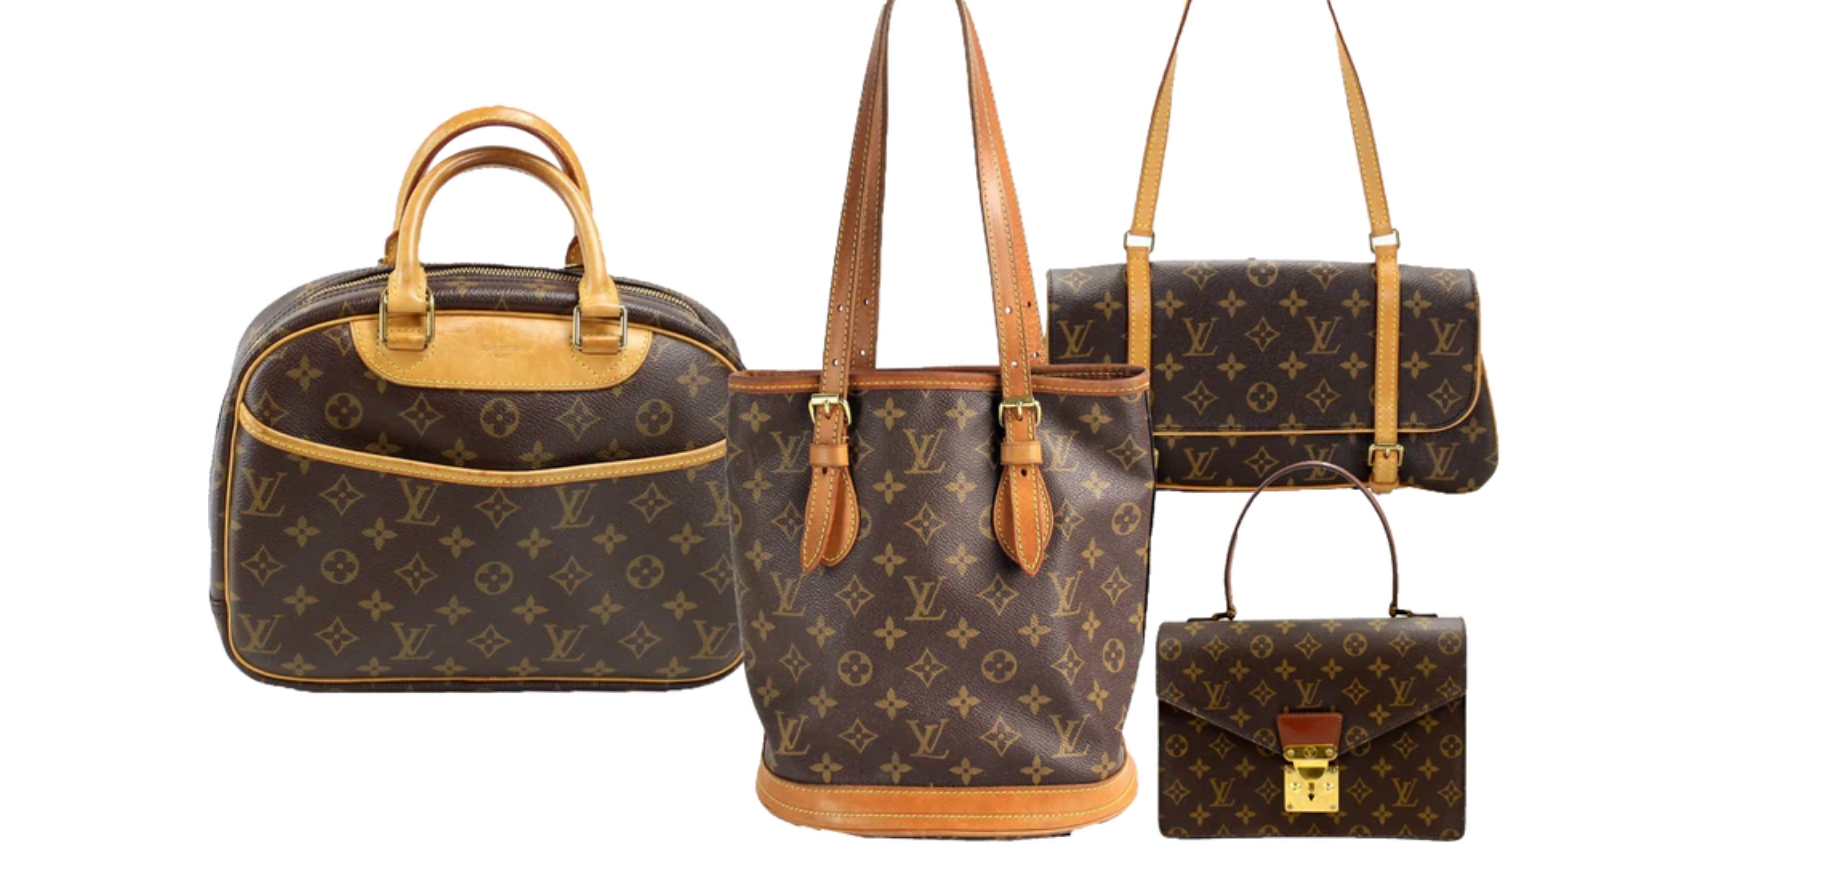 Louis Vuitton Handbags Outlet Store  Bags Luxury purses Bags designer